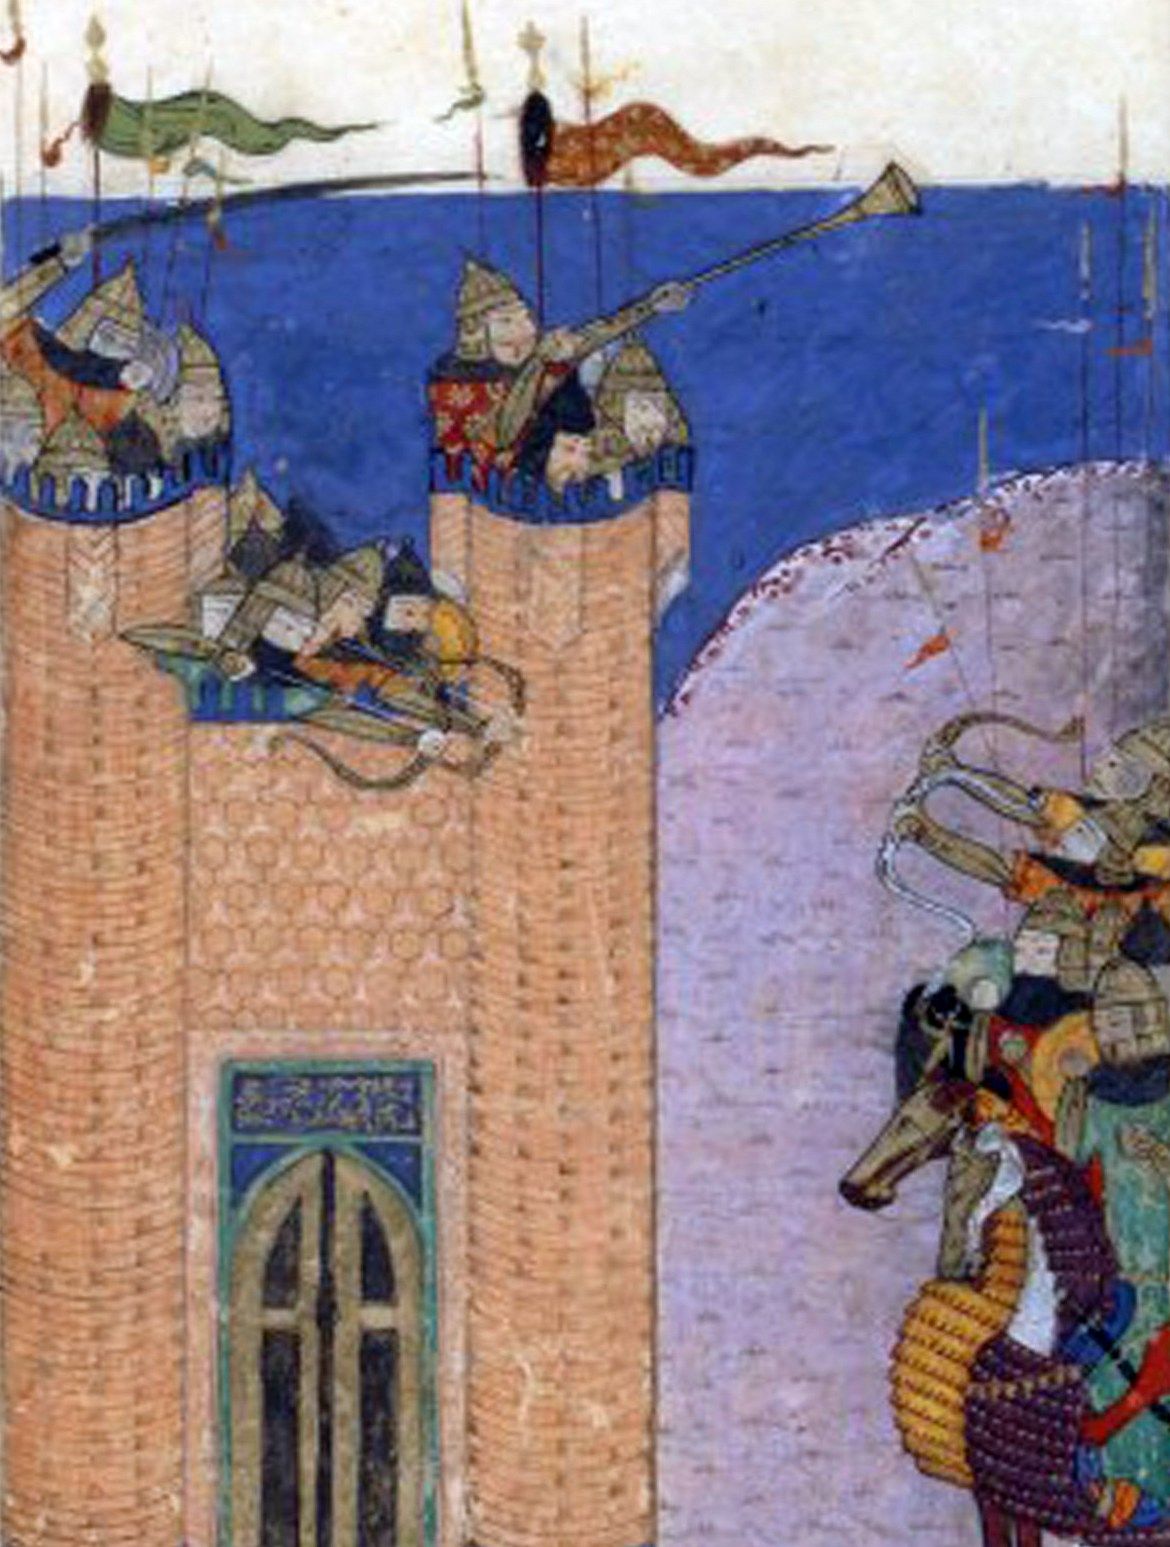 Historia państwa Nizarytów zakończyła się wraz ze zdobyciem Alamutu przez Mongołów w 1256 roku. Twierdza została zburzona, a ten, który ją poddał, bardzo źle na tym wyszedł... Miniatura z epoki przedstawiająca oblężenie (źródło: domena publiczna).